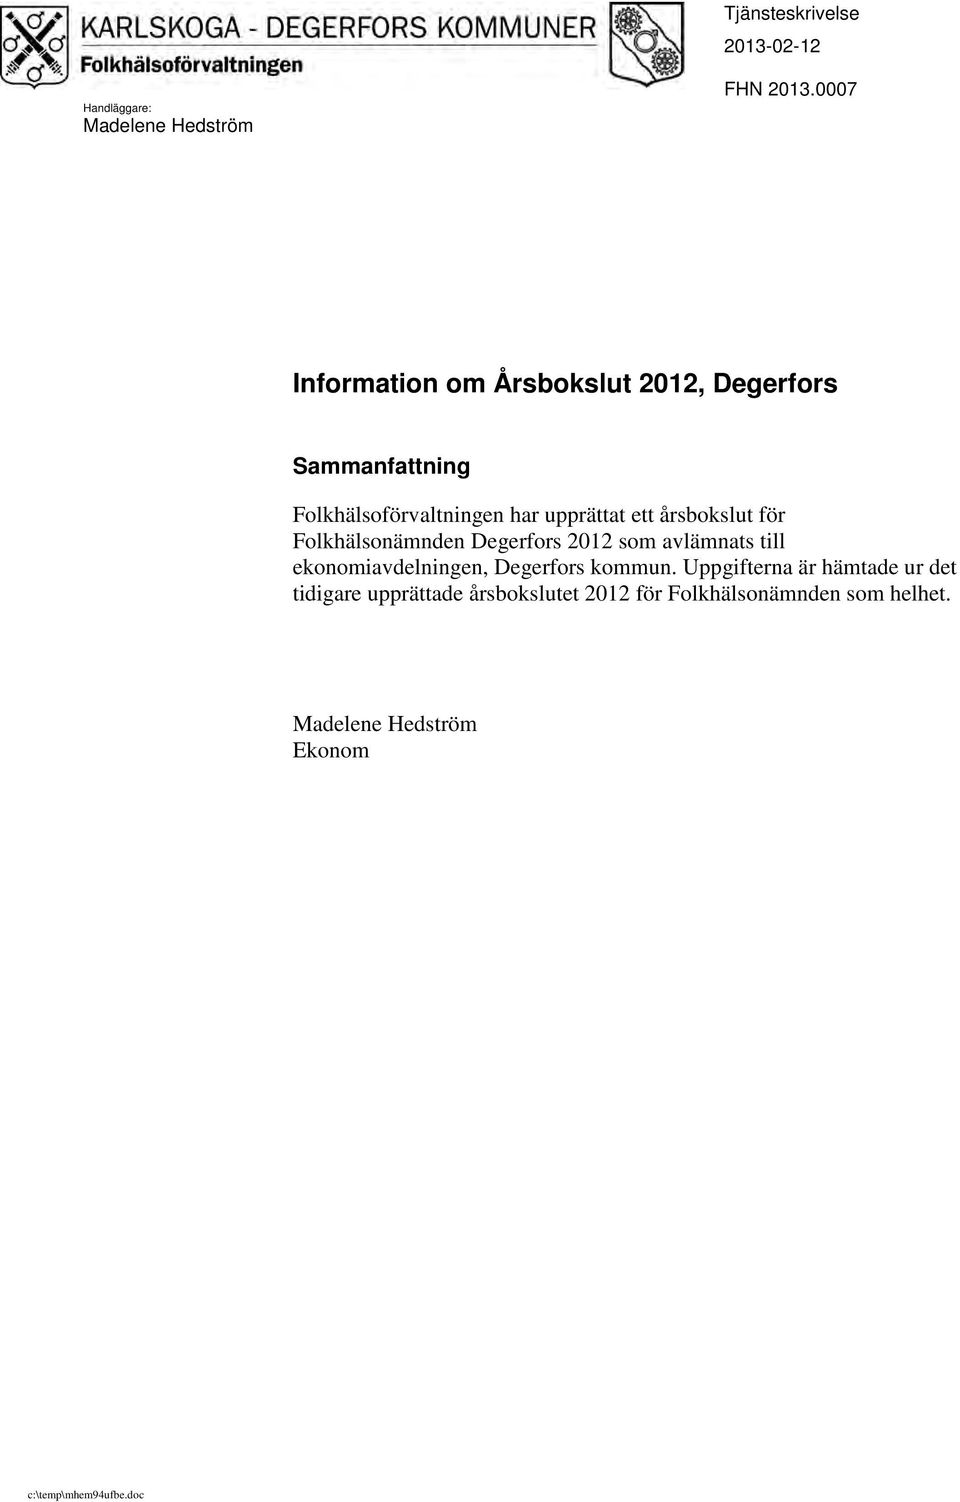 årsbokslut för Folkhälsonämnden Degerfors 2012 som avlämnats till ekonomiavdelningen, Degerfors kommun.